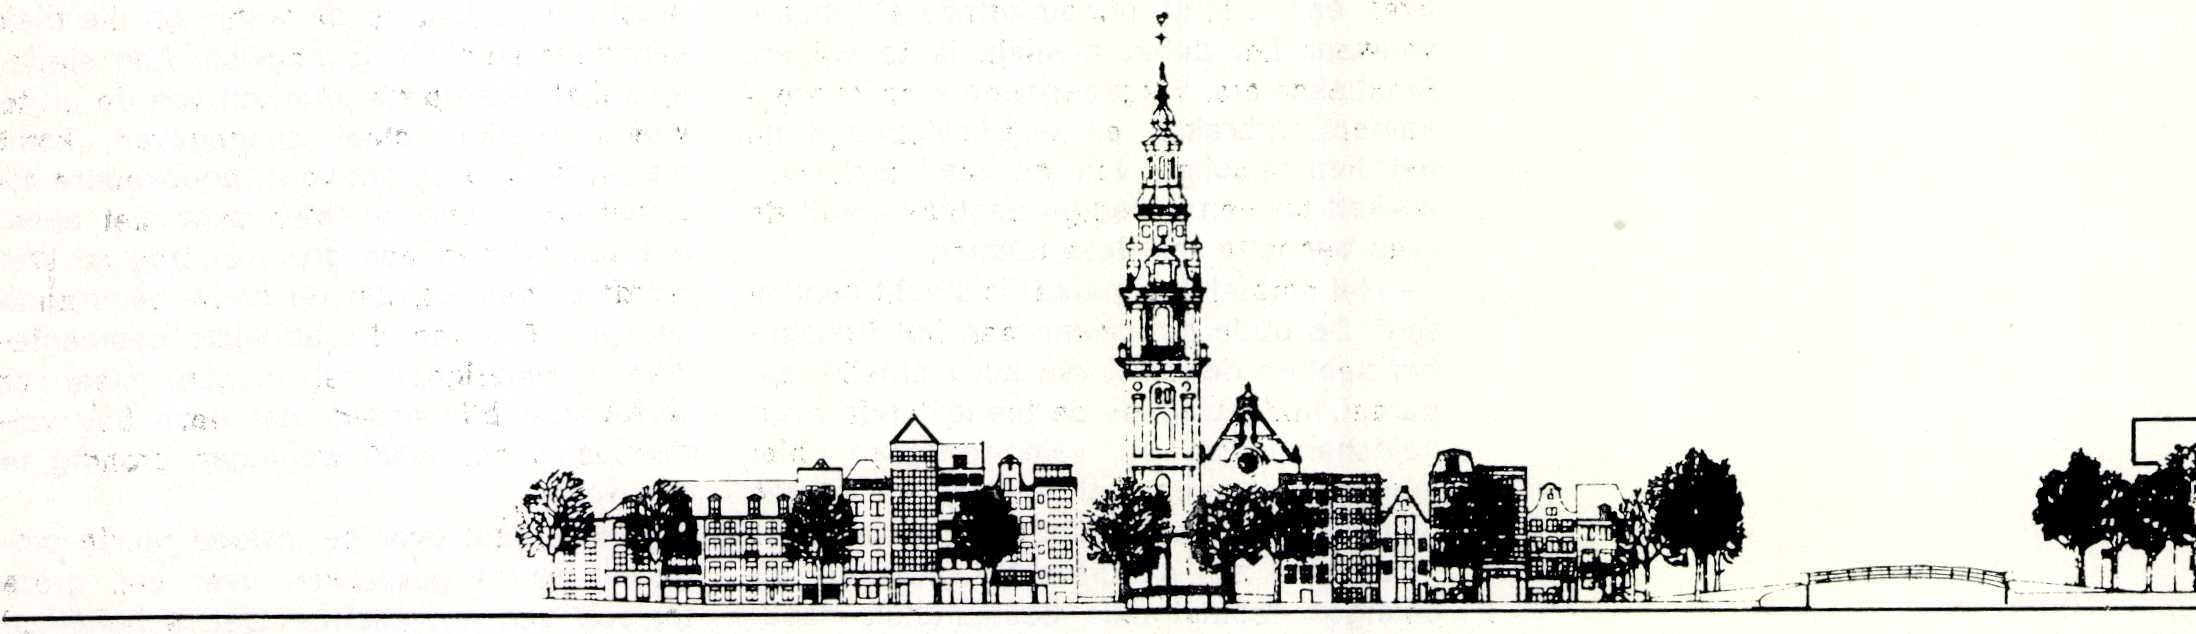 Eerste concept Stadhuis Amsterdam door W. Holzbauer